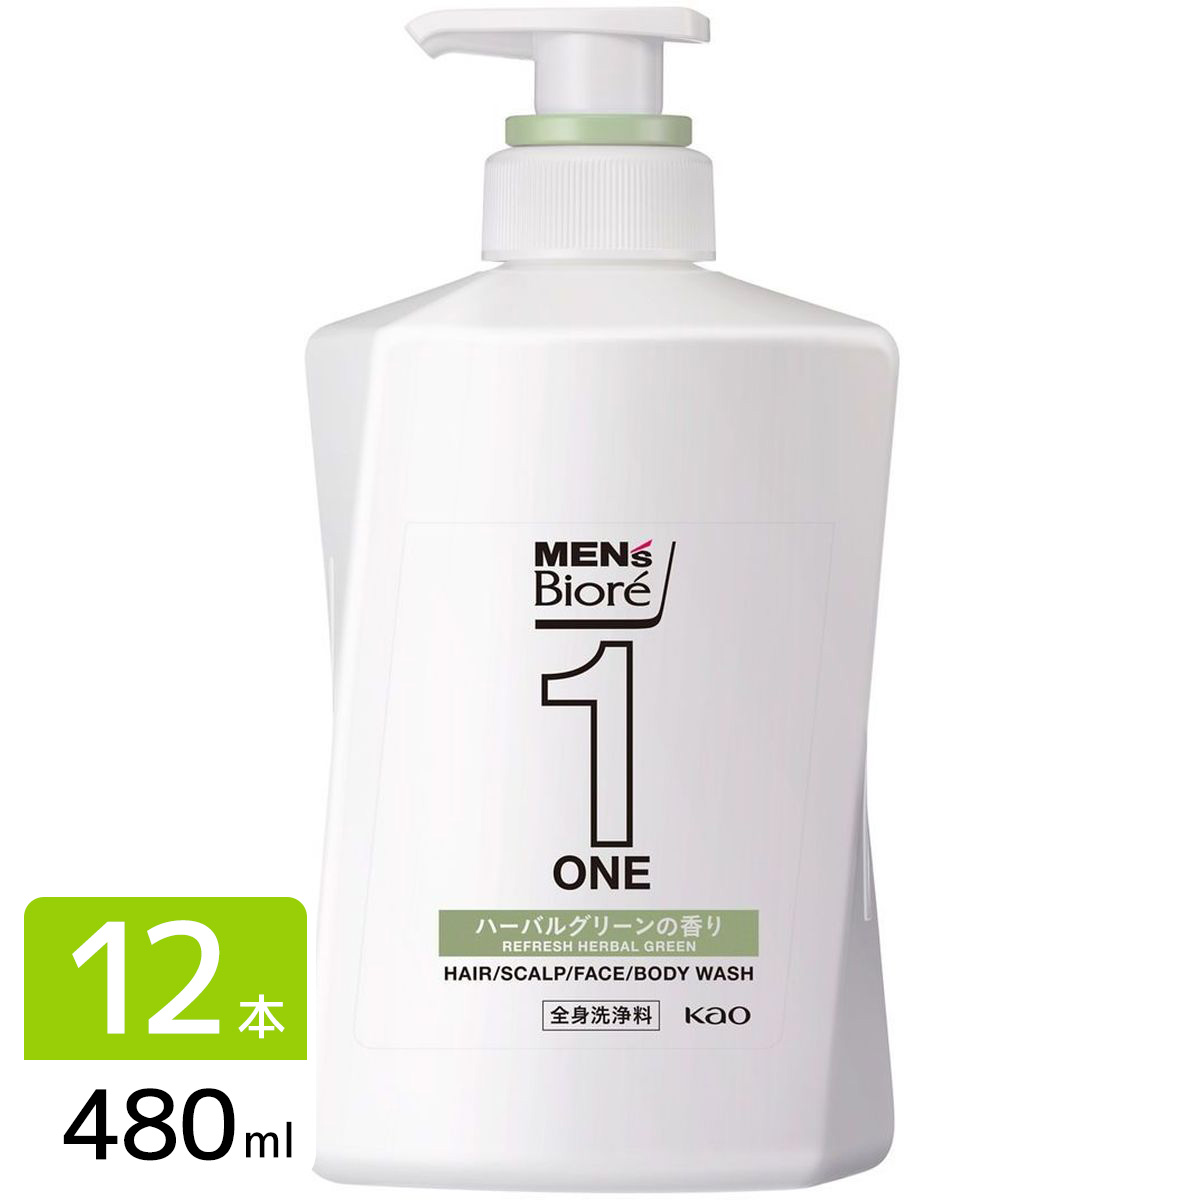 メンズビオレ ONE オールインワン全身洗浄料 爽やかなハーバルグリーンの香り 本体 480ml×12本